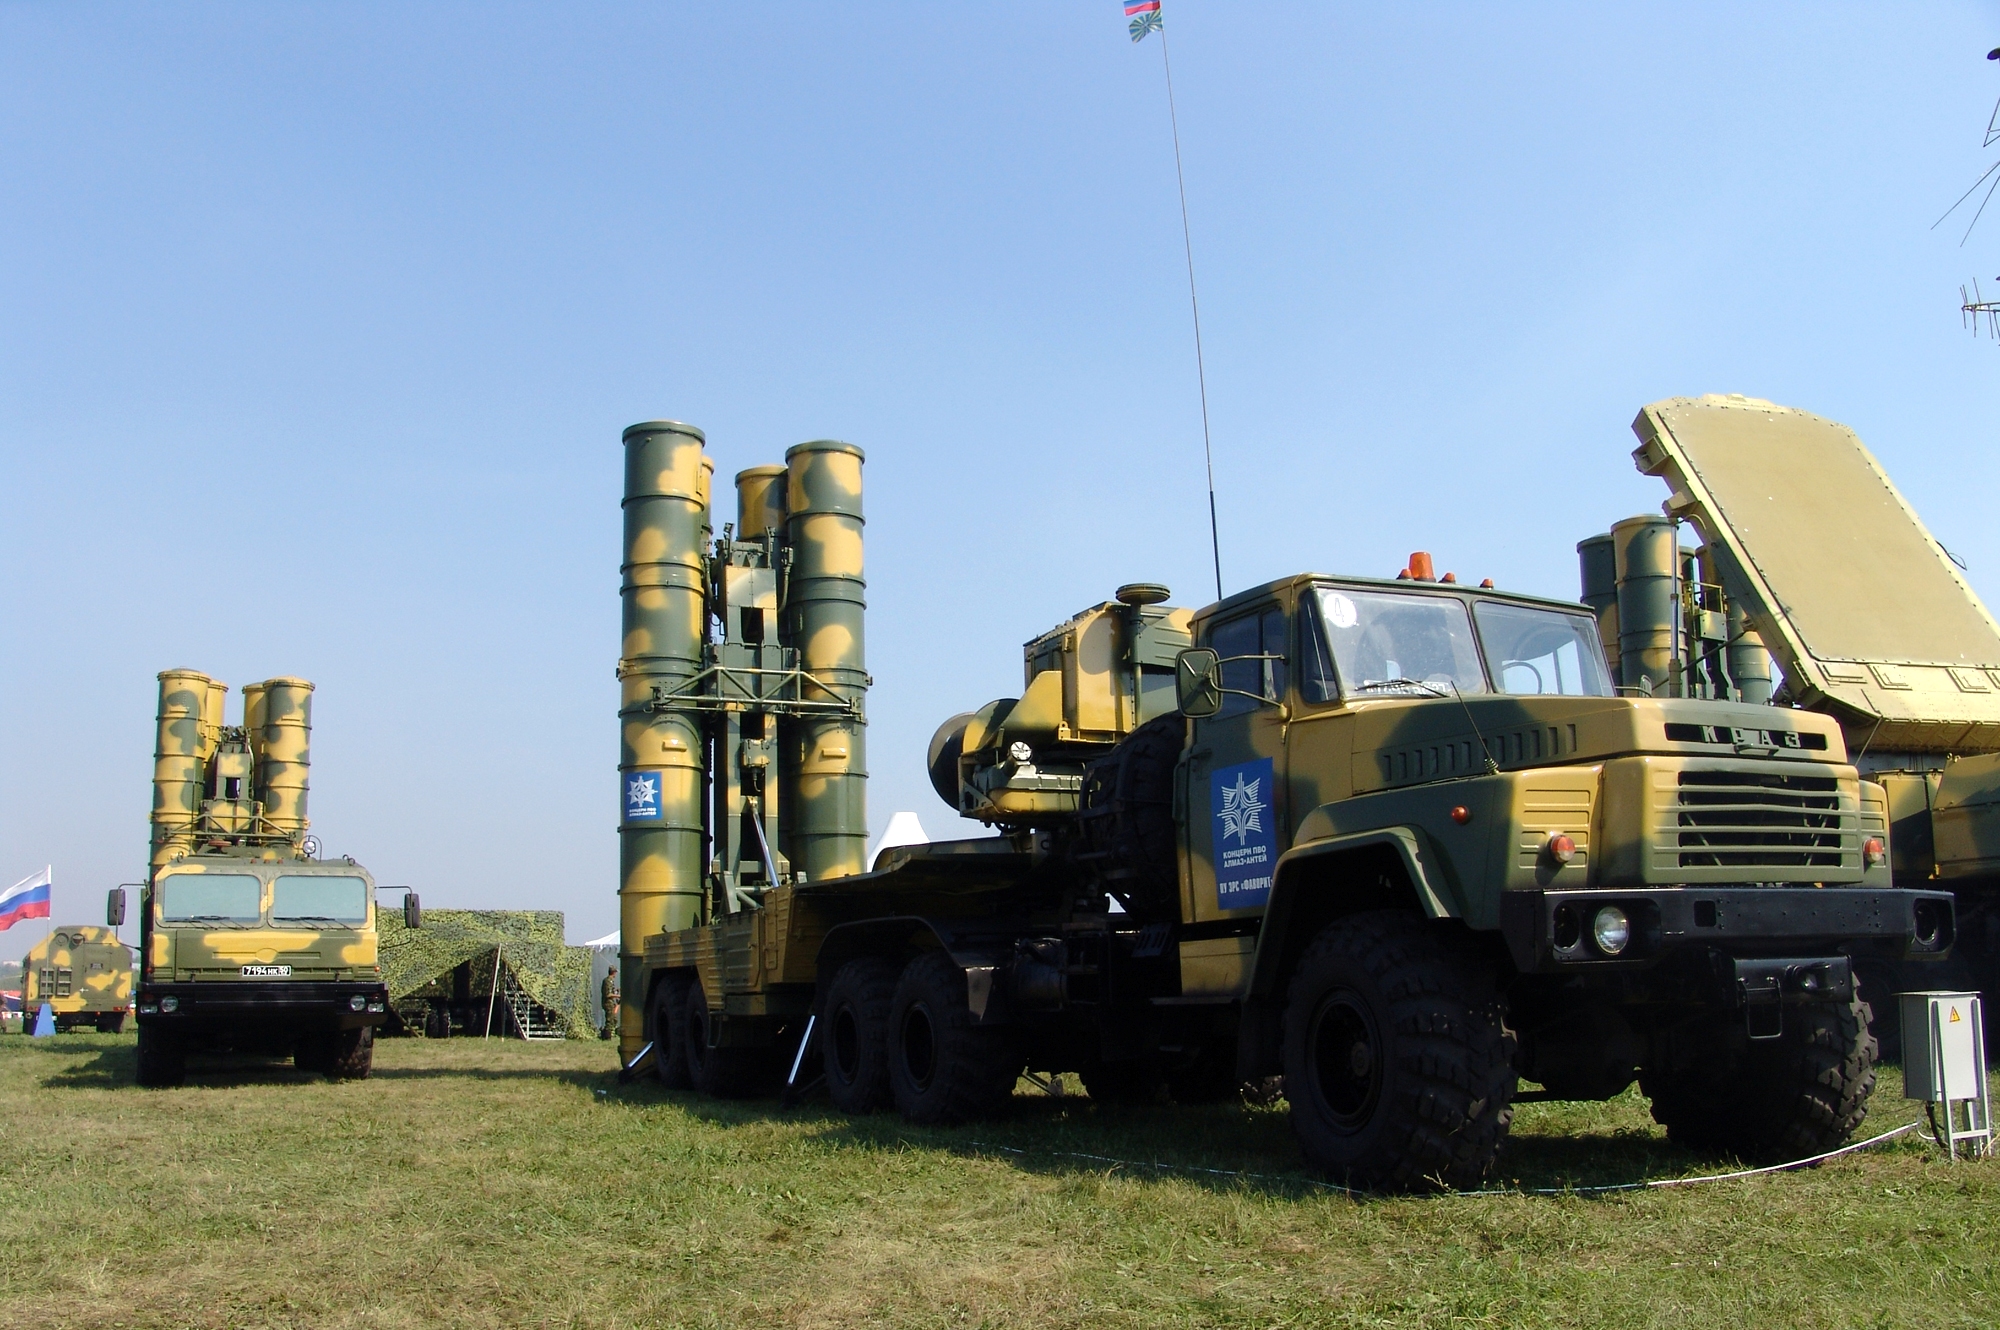 Αναβάθμιση των S-300PMU-1 της ΠΑ στο επίπεδο PMU-2 Favorit: Ξεκινούν συνομιλίες με Ρωσία